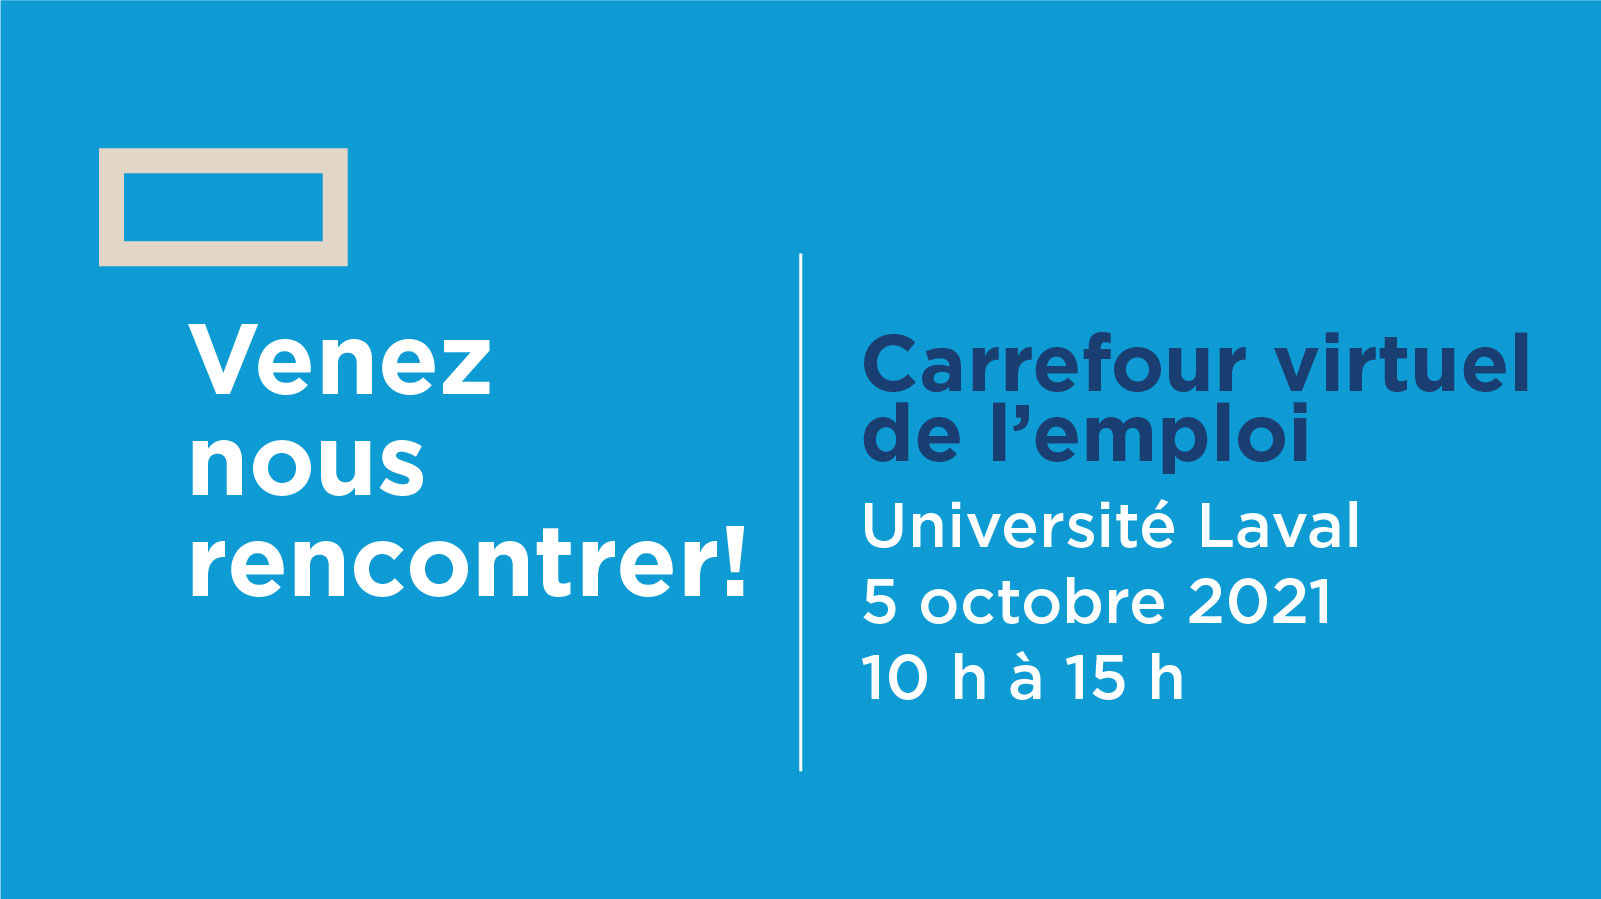 Carrefour virtuel de l'emploi - Université Laval - 5 octobre 2021 de 10 h à 15 h